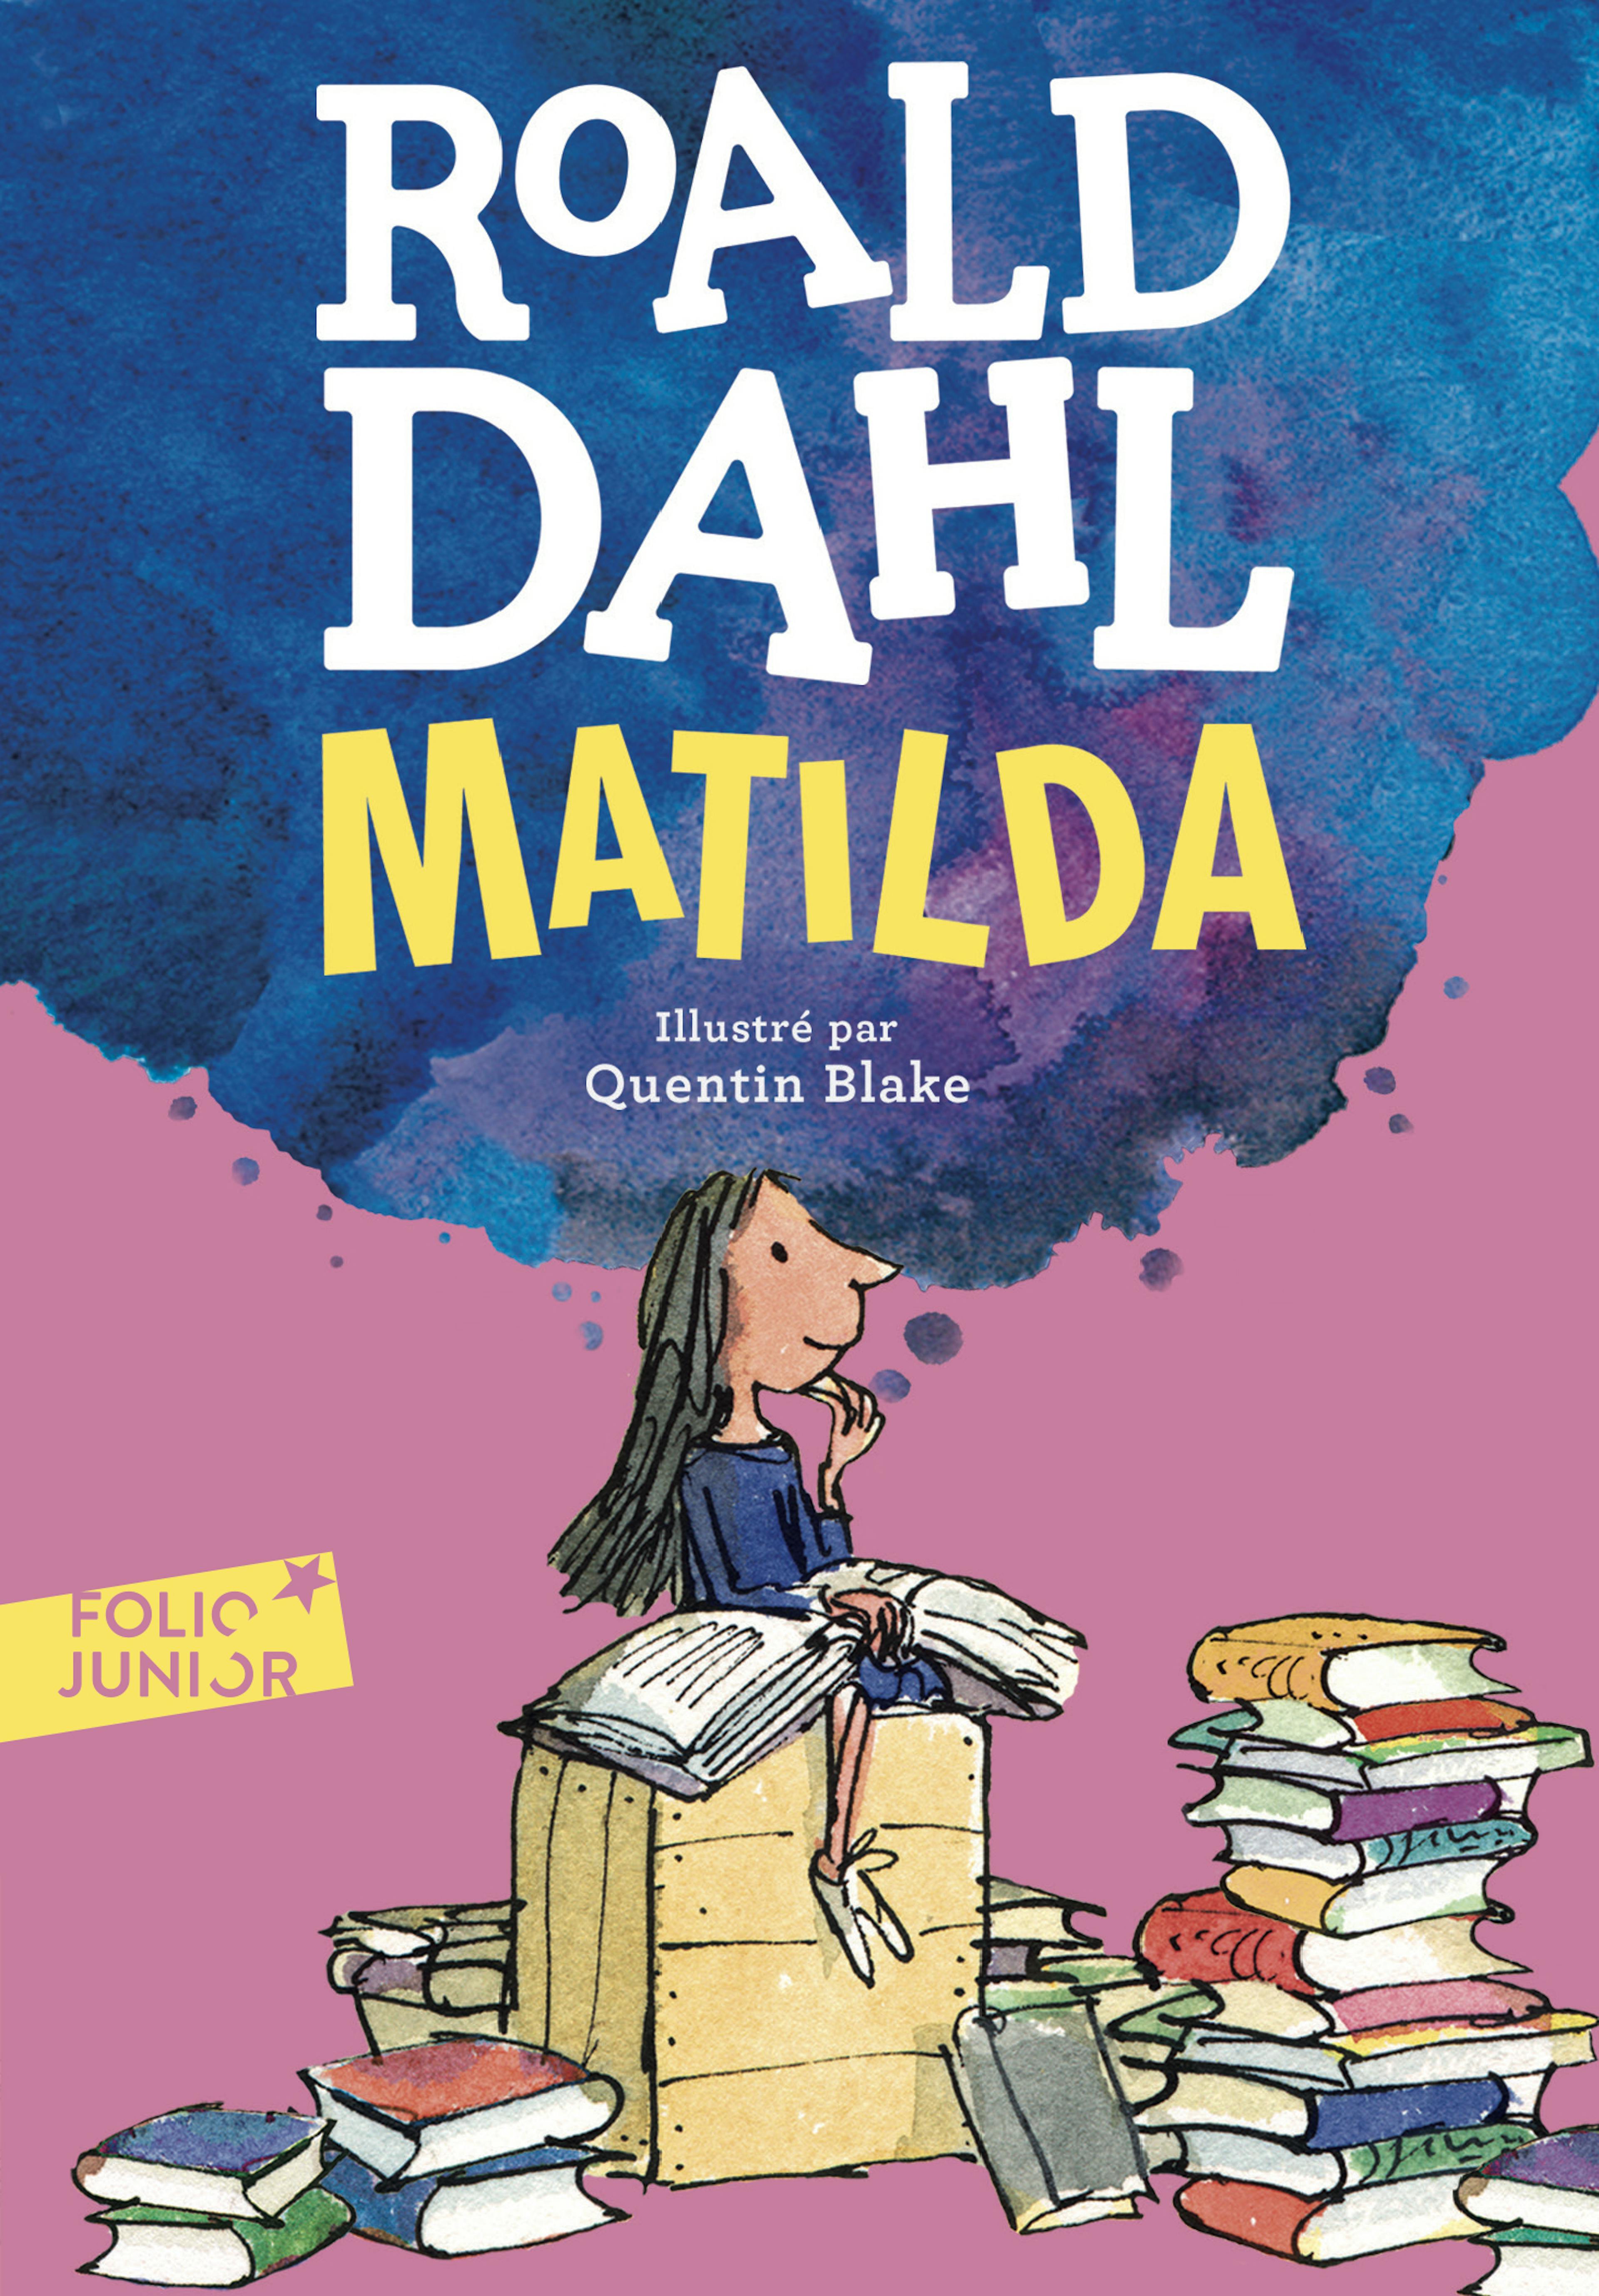 Couverture du roman "Matilda" de Roald Dahl